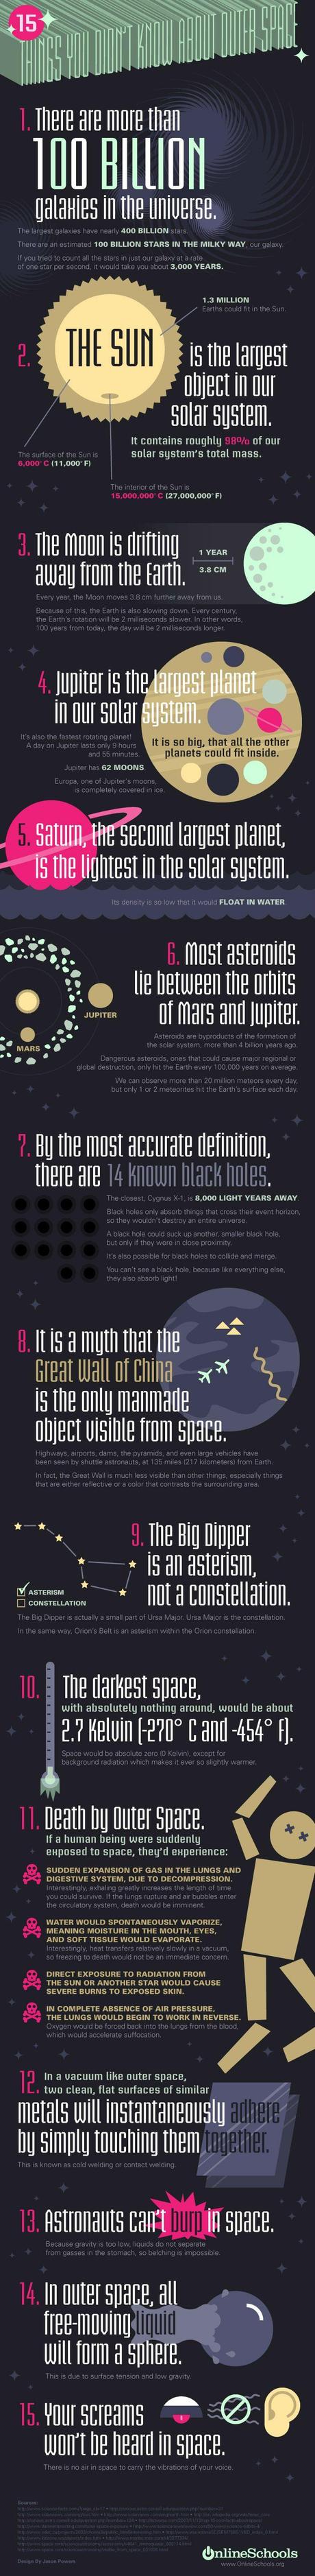 15 choses que vous ne savez probablement pas sur l'espace